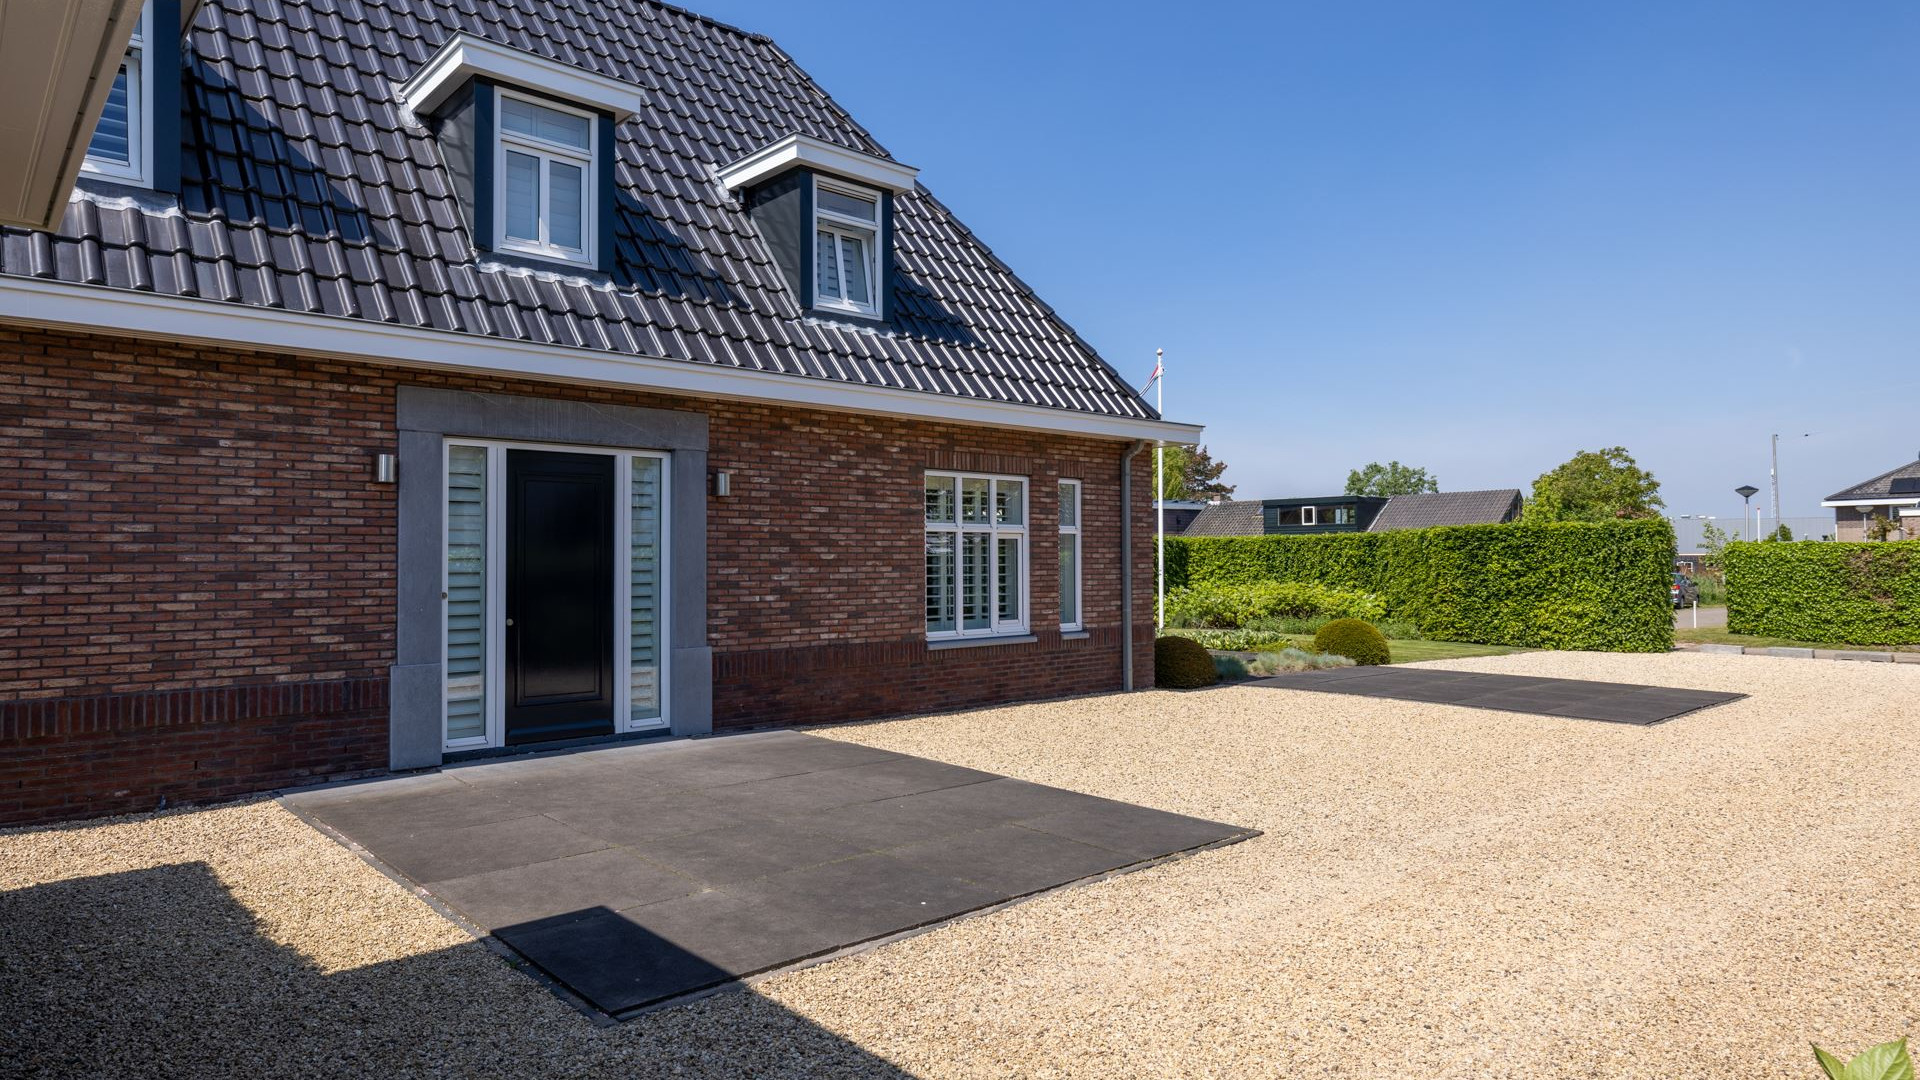 Keeper van Feijenoord koopt miljoenen villa in Berkel en Rodenrijs. Zie foto's 29